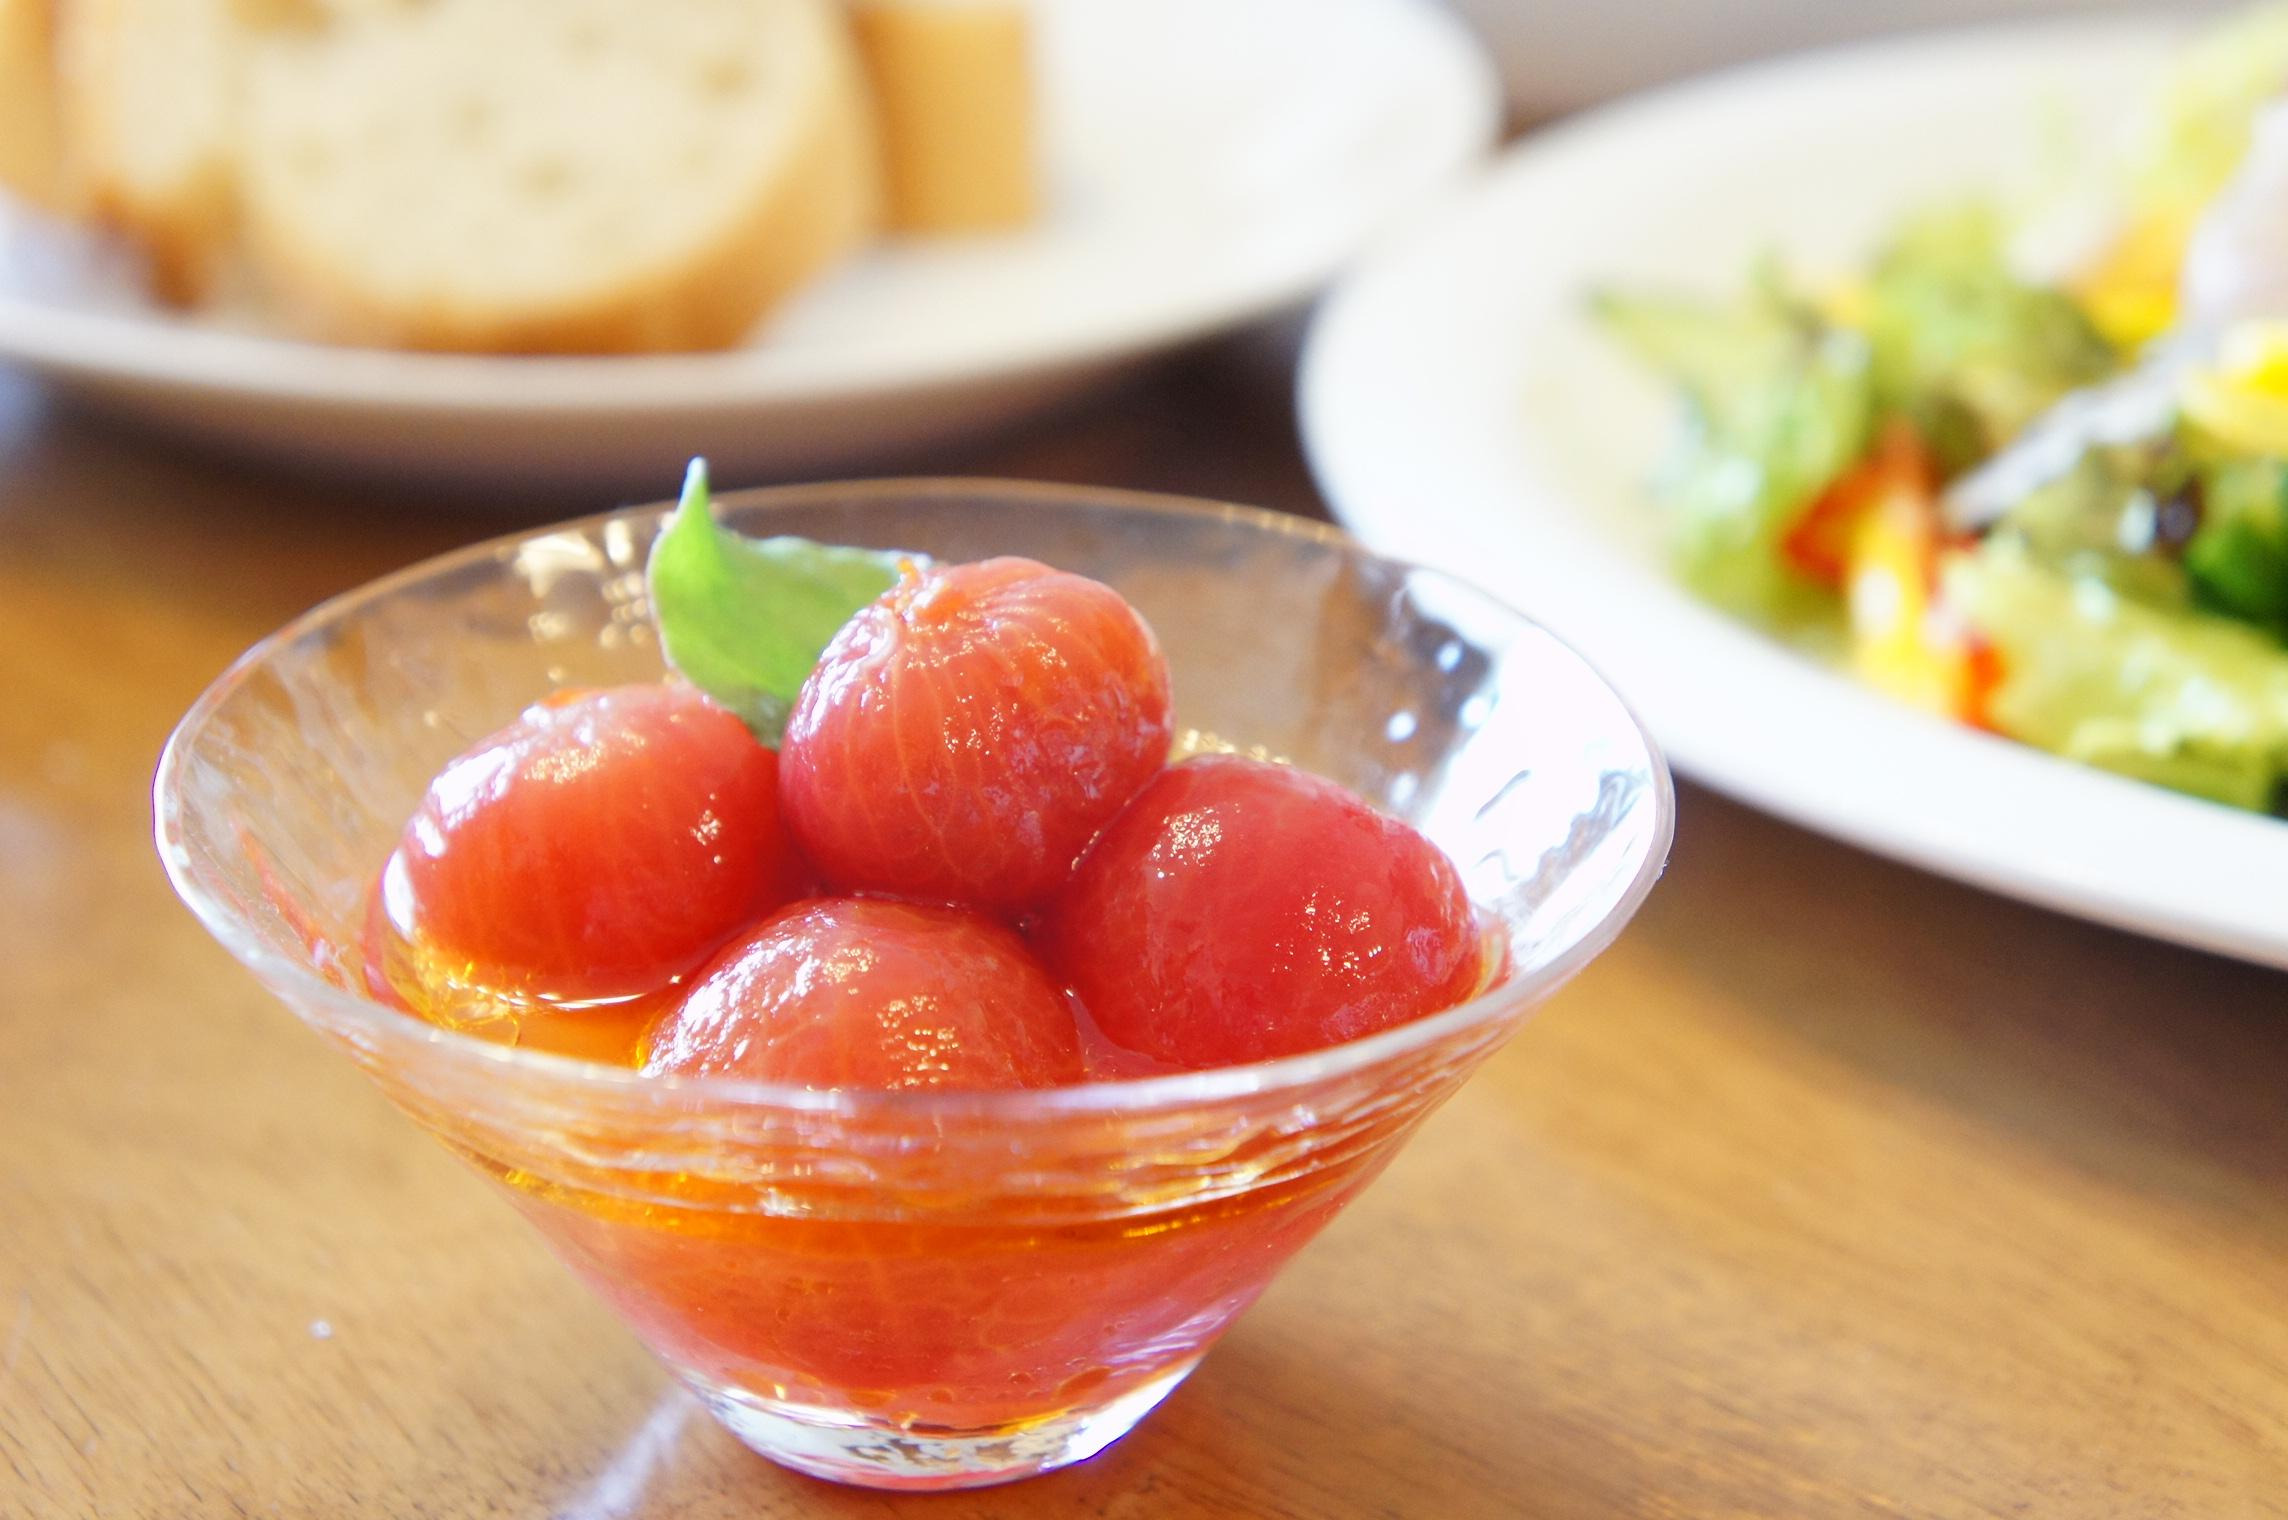 プチトマトの蜂蜜マリネのレシピ 作り方 小宮山 美香 料理教室検索サイト クスパ